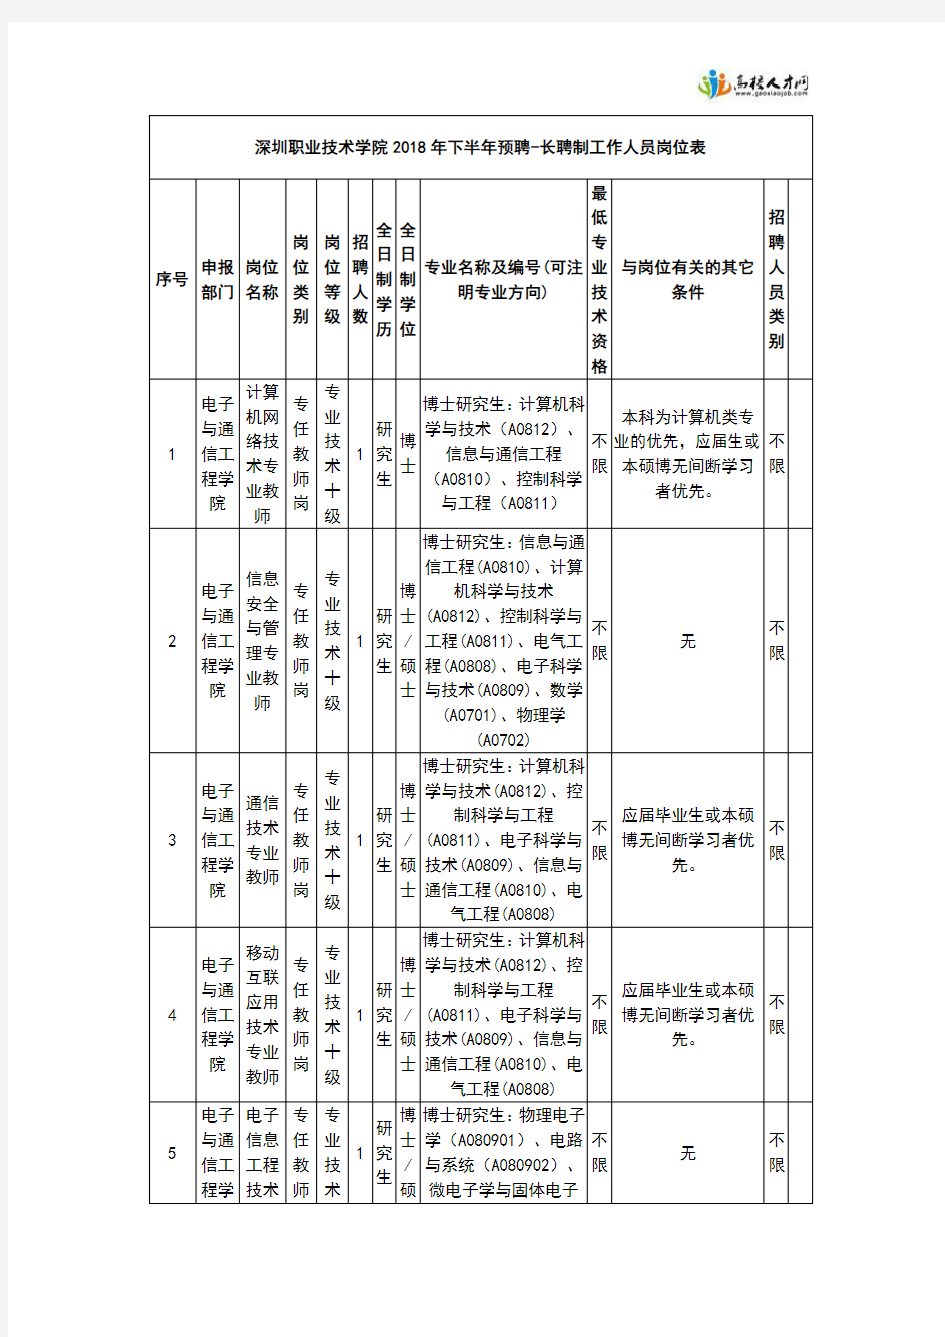 深圳职业技术学院2018年下半年预聘-长聘制工作人员岗位表